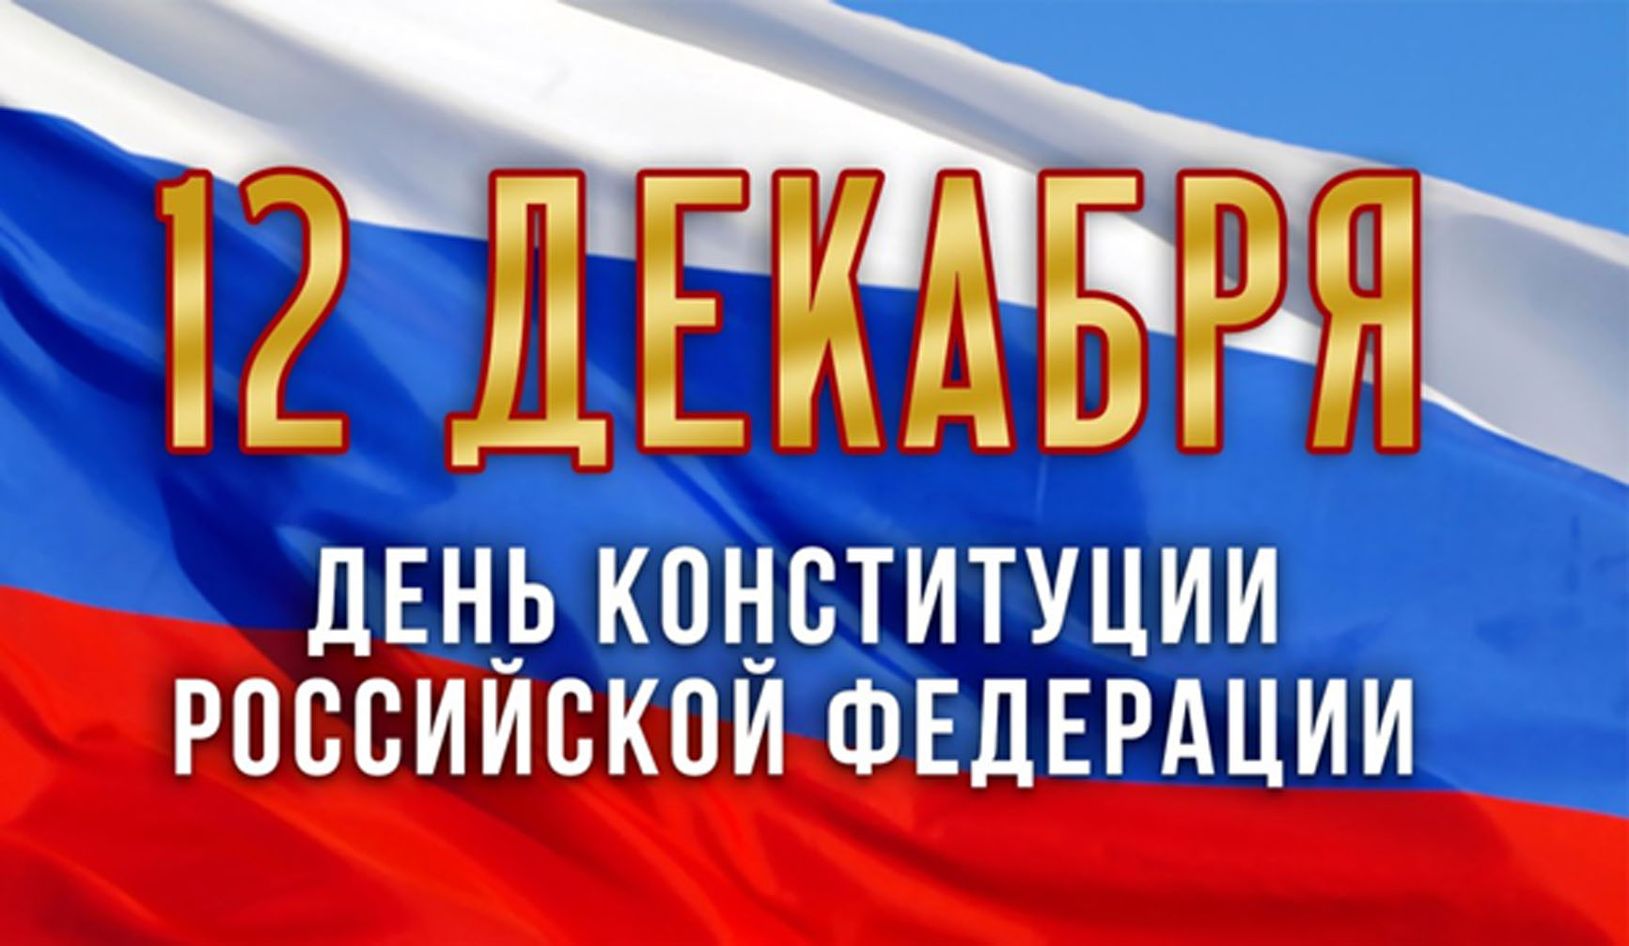 12 декабря - день Конституции Российской Федерации. Конституционные права и свободы граждан..